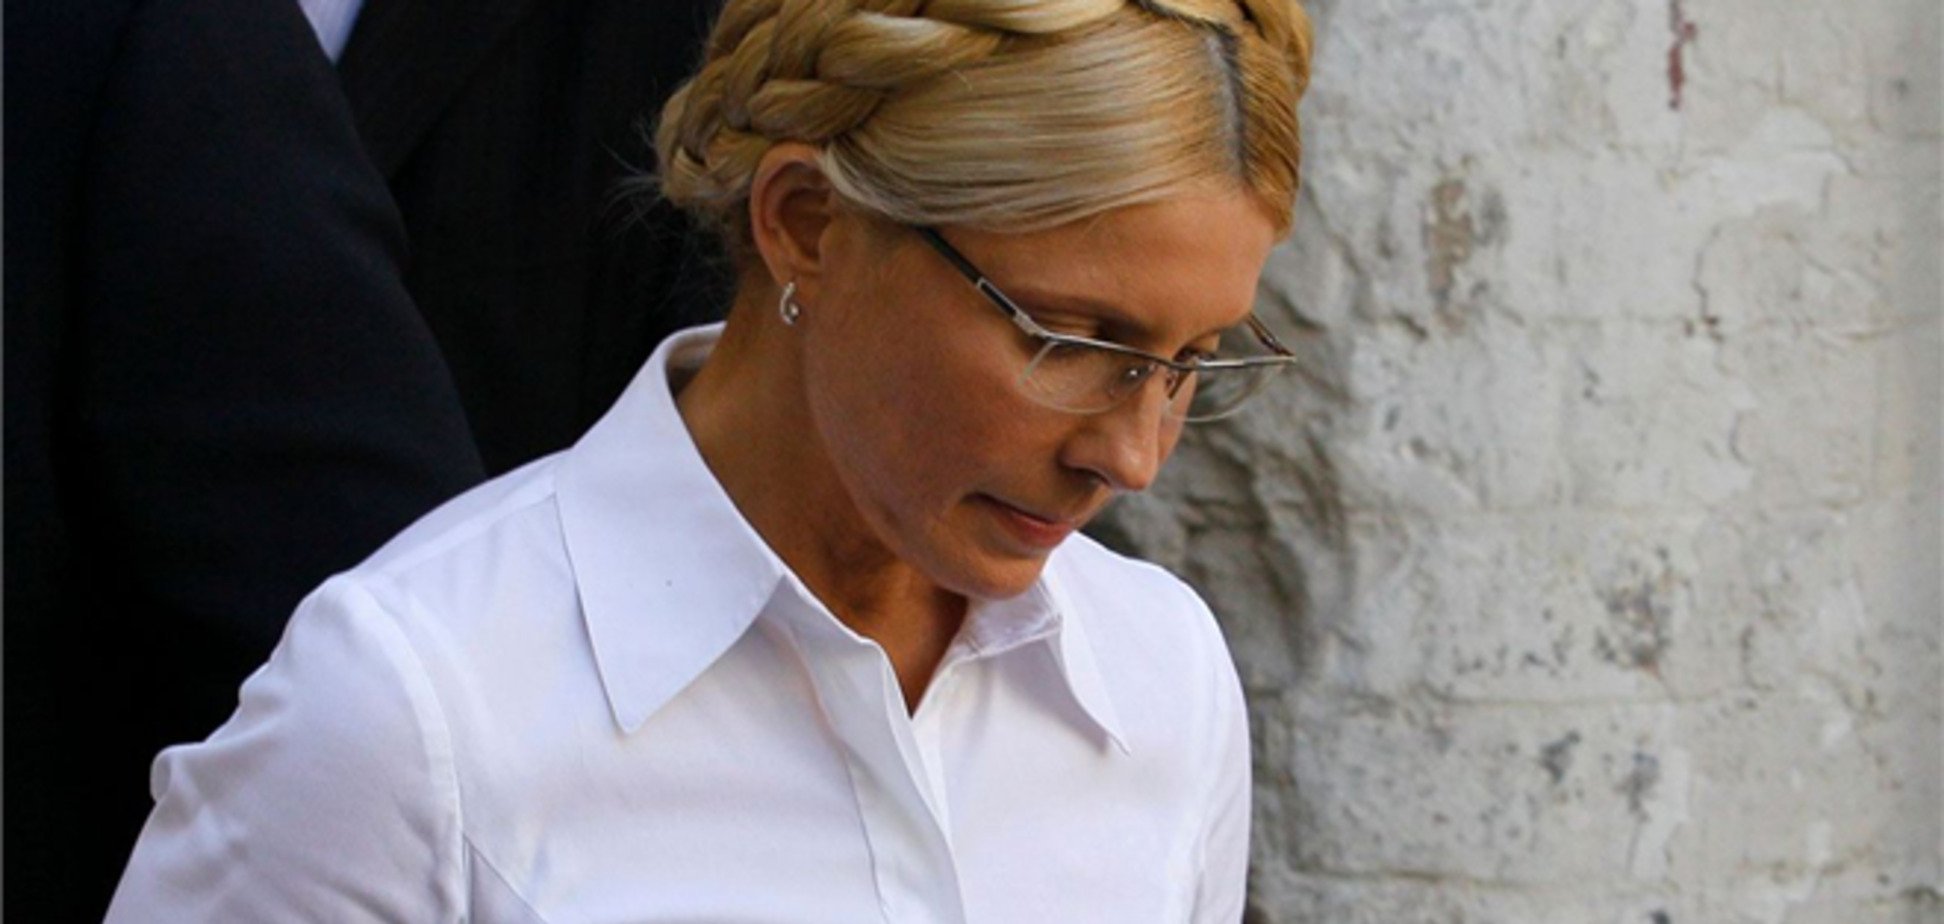 Лікування Тимошенко за кордоном заборонено законом - юрист